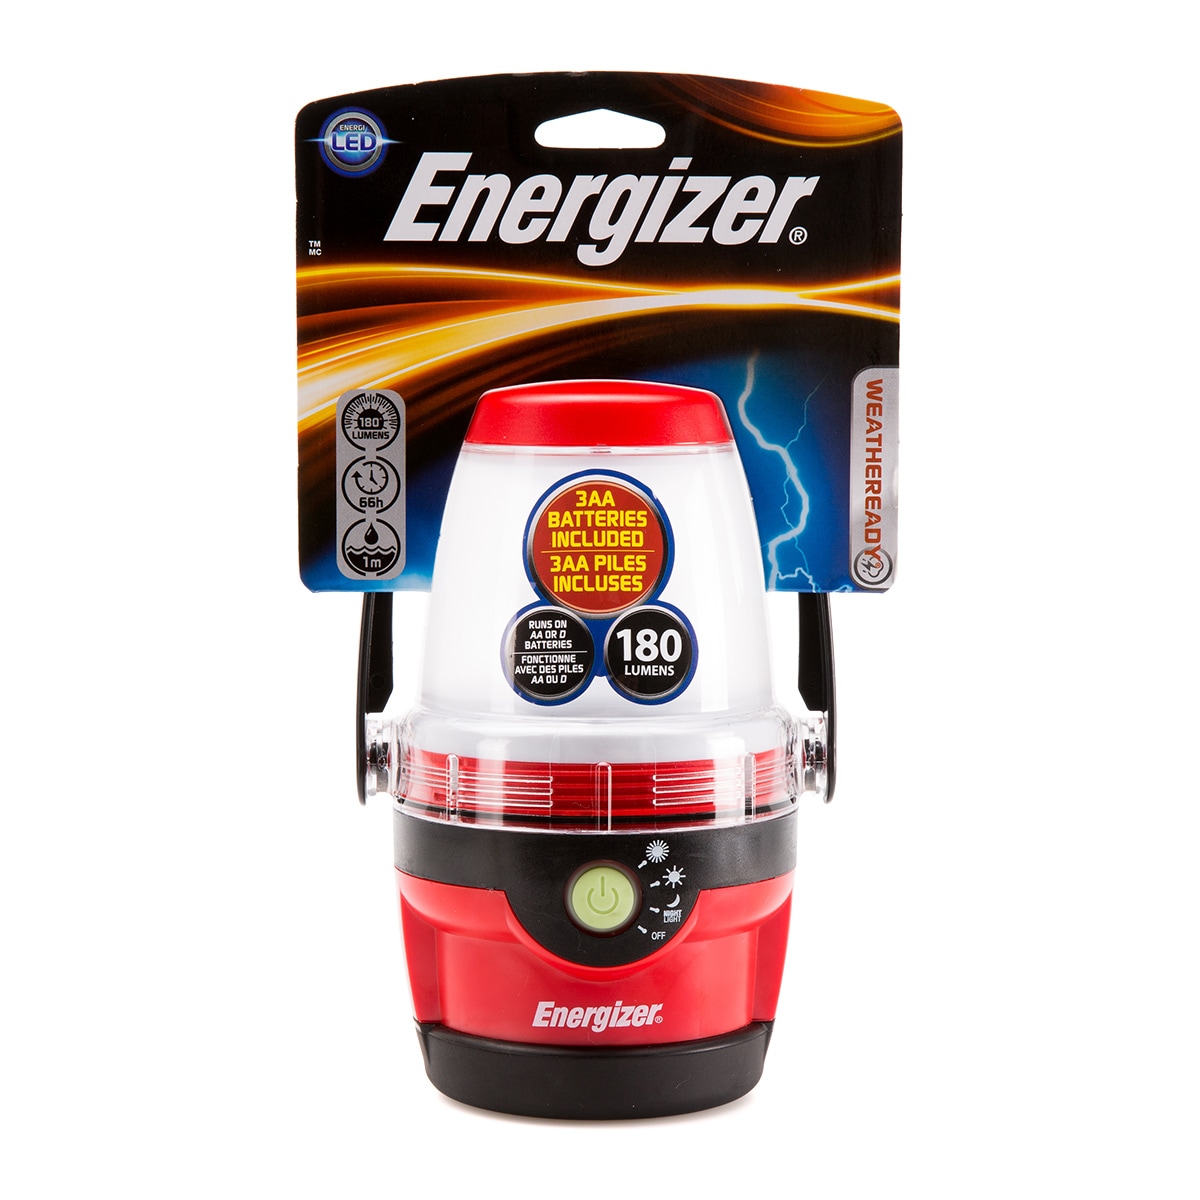 Energizer LED Camping Lantern Flashlight, Battery Powered LED